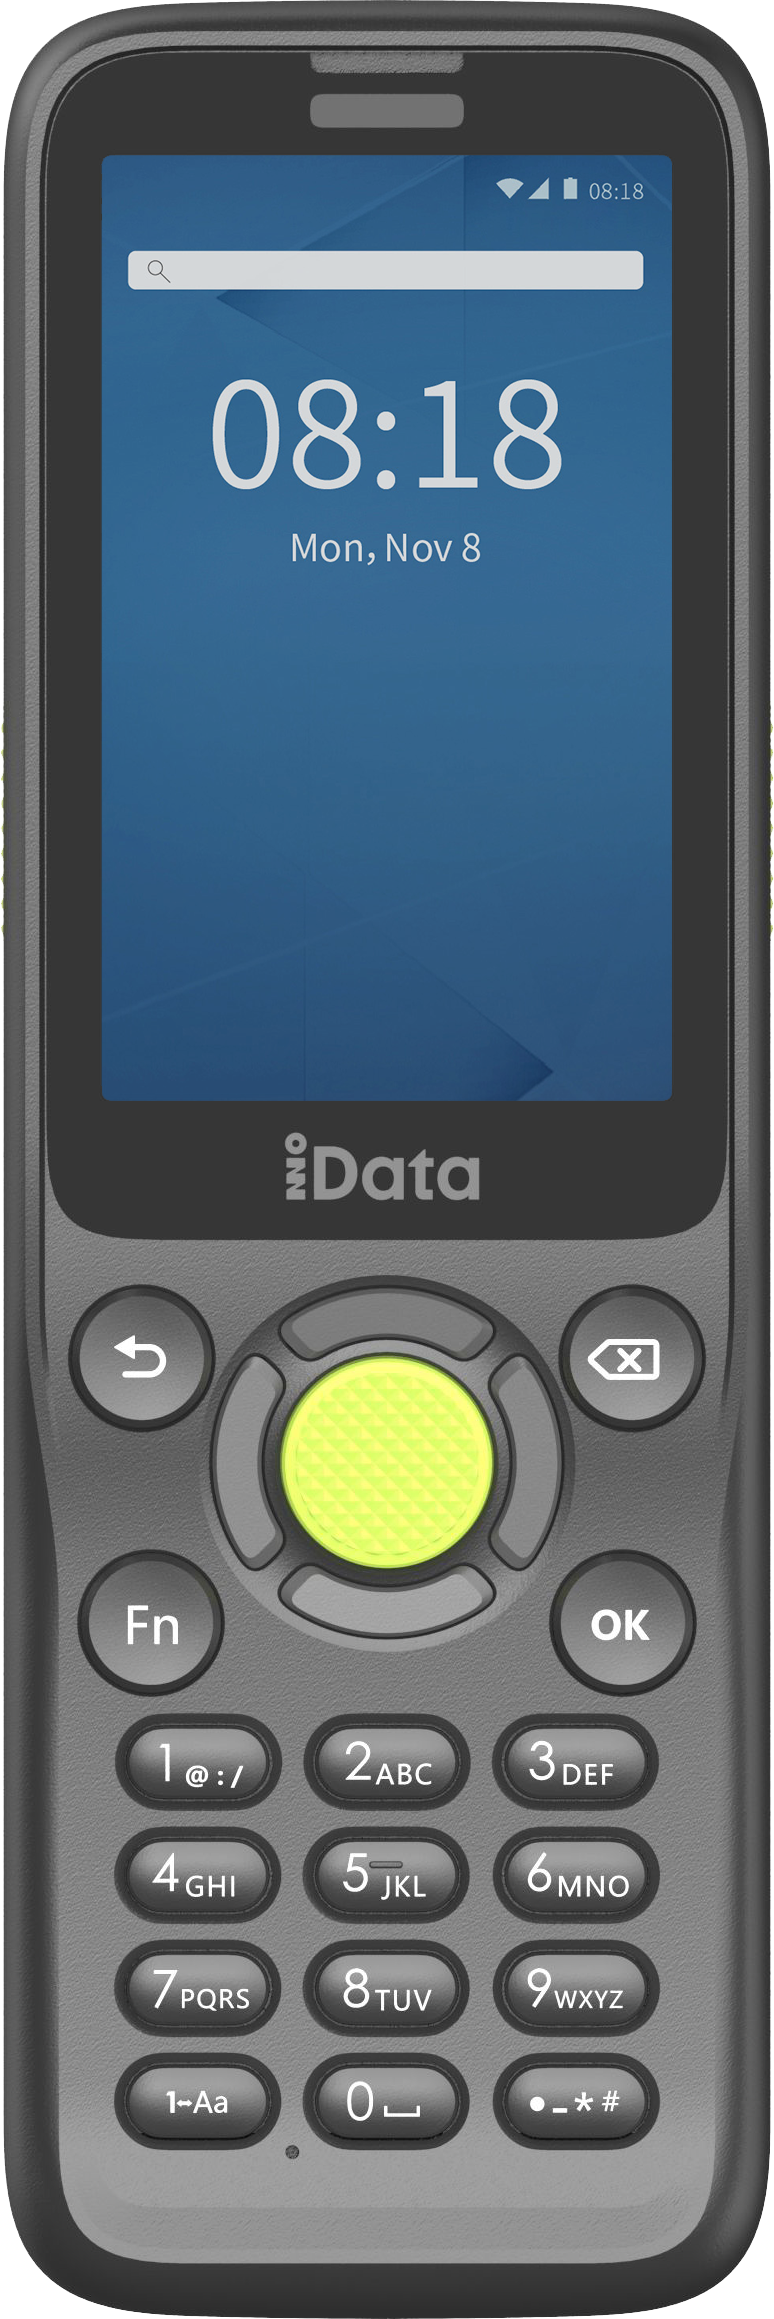 iData-PDA及配件